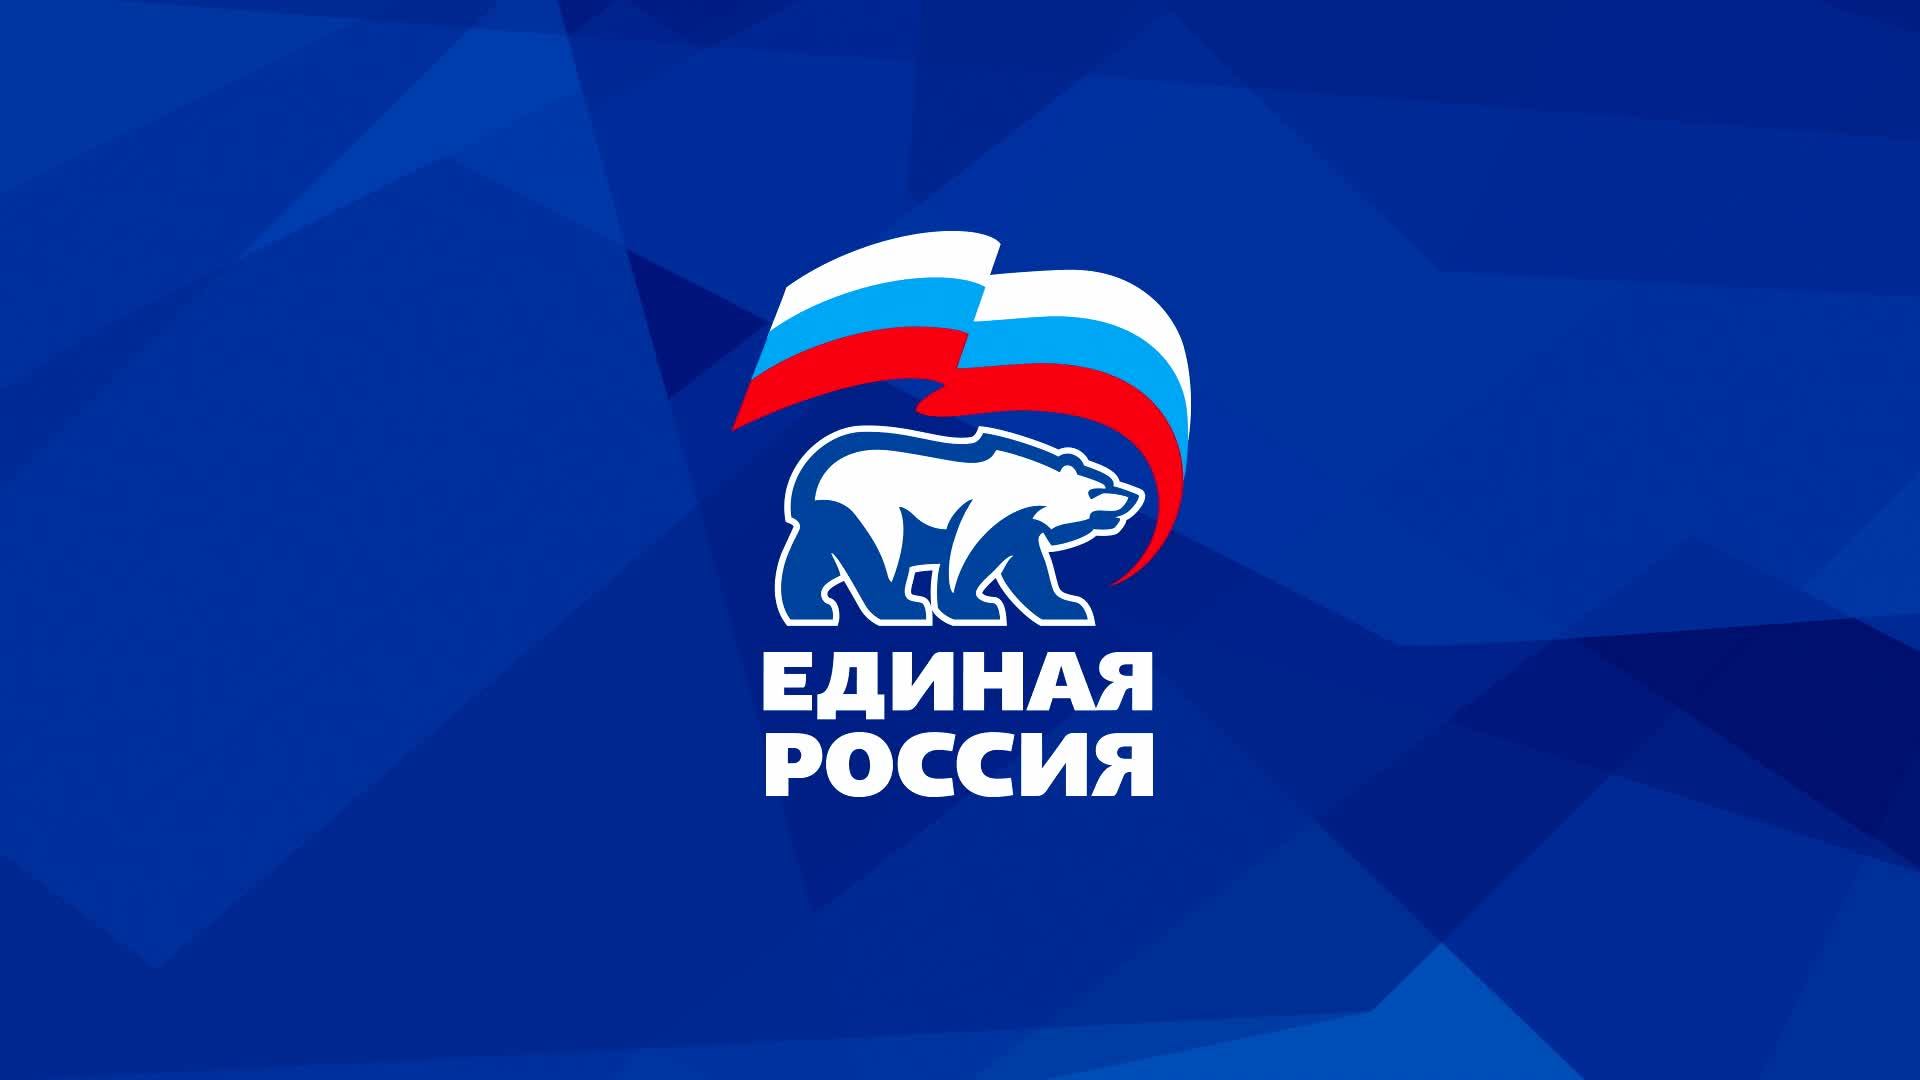 Предварительное голосование «Единой России» — это открытая и прозрачная процедура, не имеющая аналогов в России.